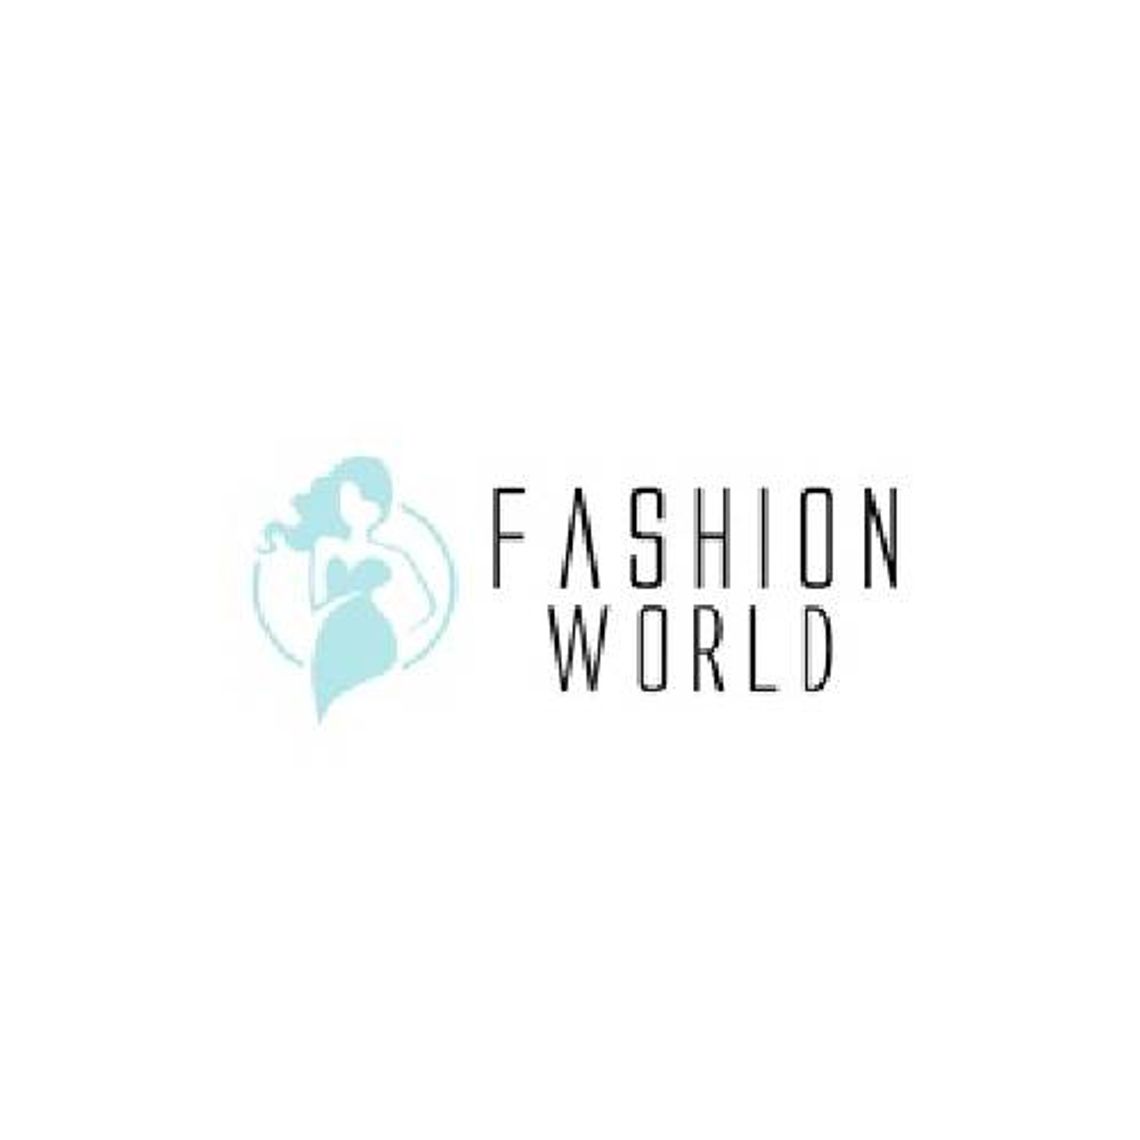 Fashionworld - odzież, torebki i akcesoria